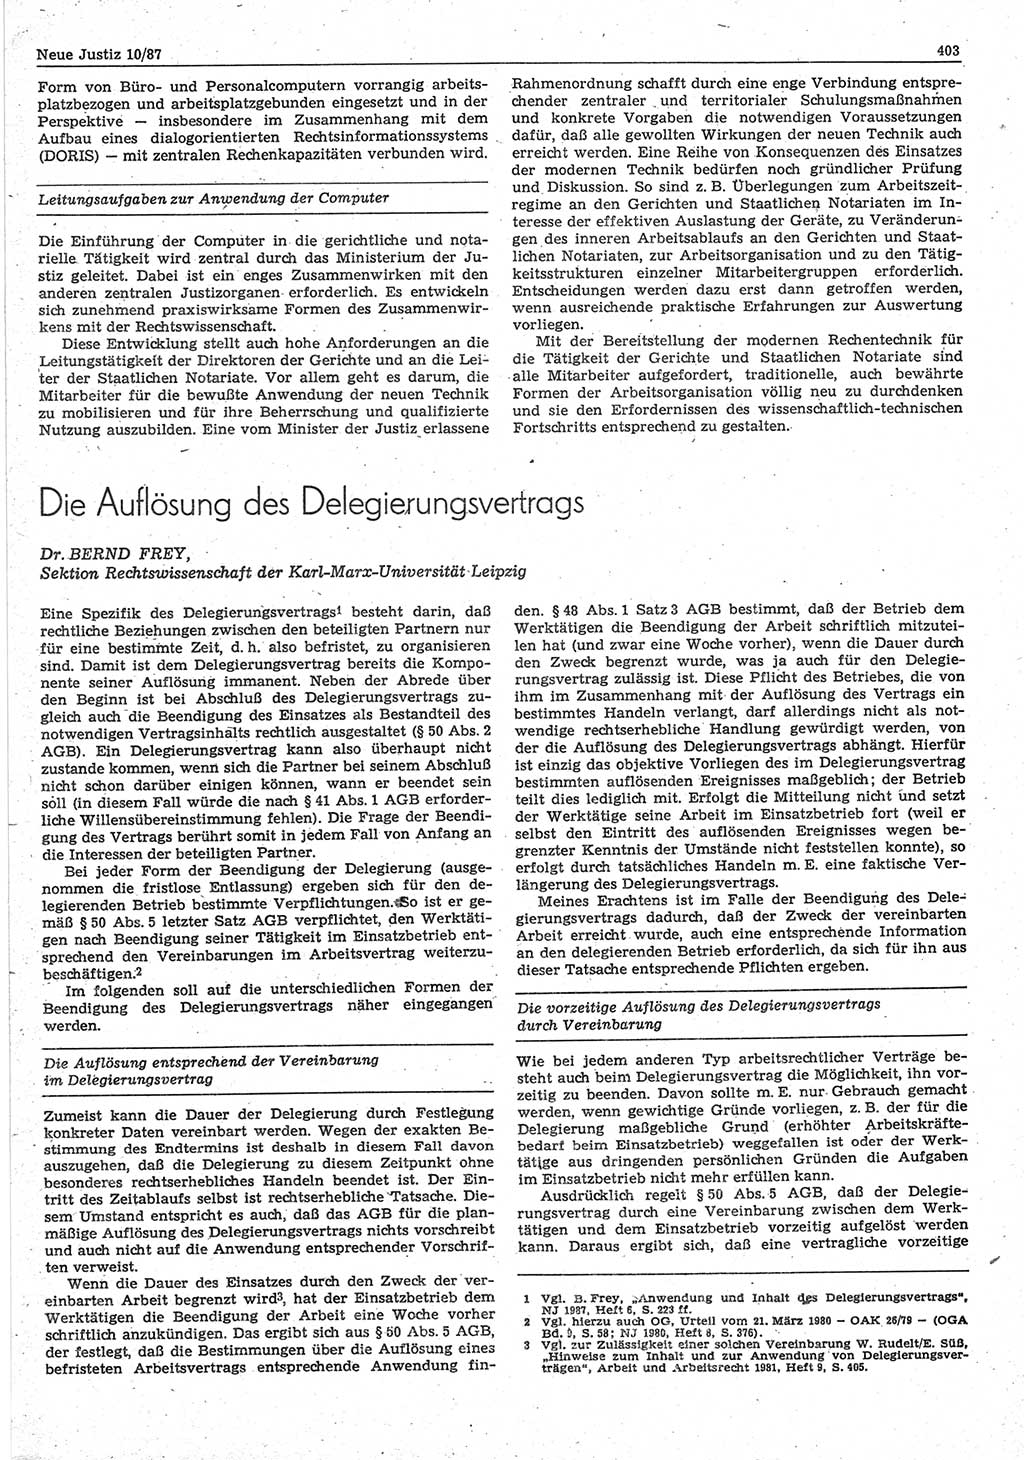 Neue Justiz (NJ), Zeitschrift für sozialistisches Recht und Gesetzlichkeit [Deutsche Demokratische Republik (DDR)], 41. Jahrgang 1987, Seite 403 (NJ DDR 1987, S. 403)